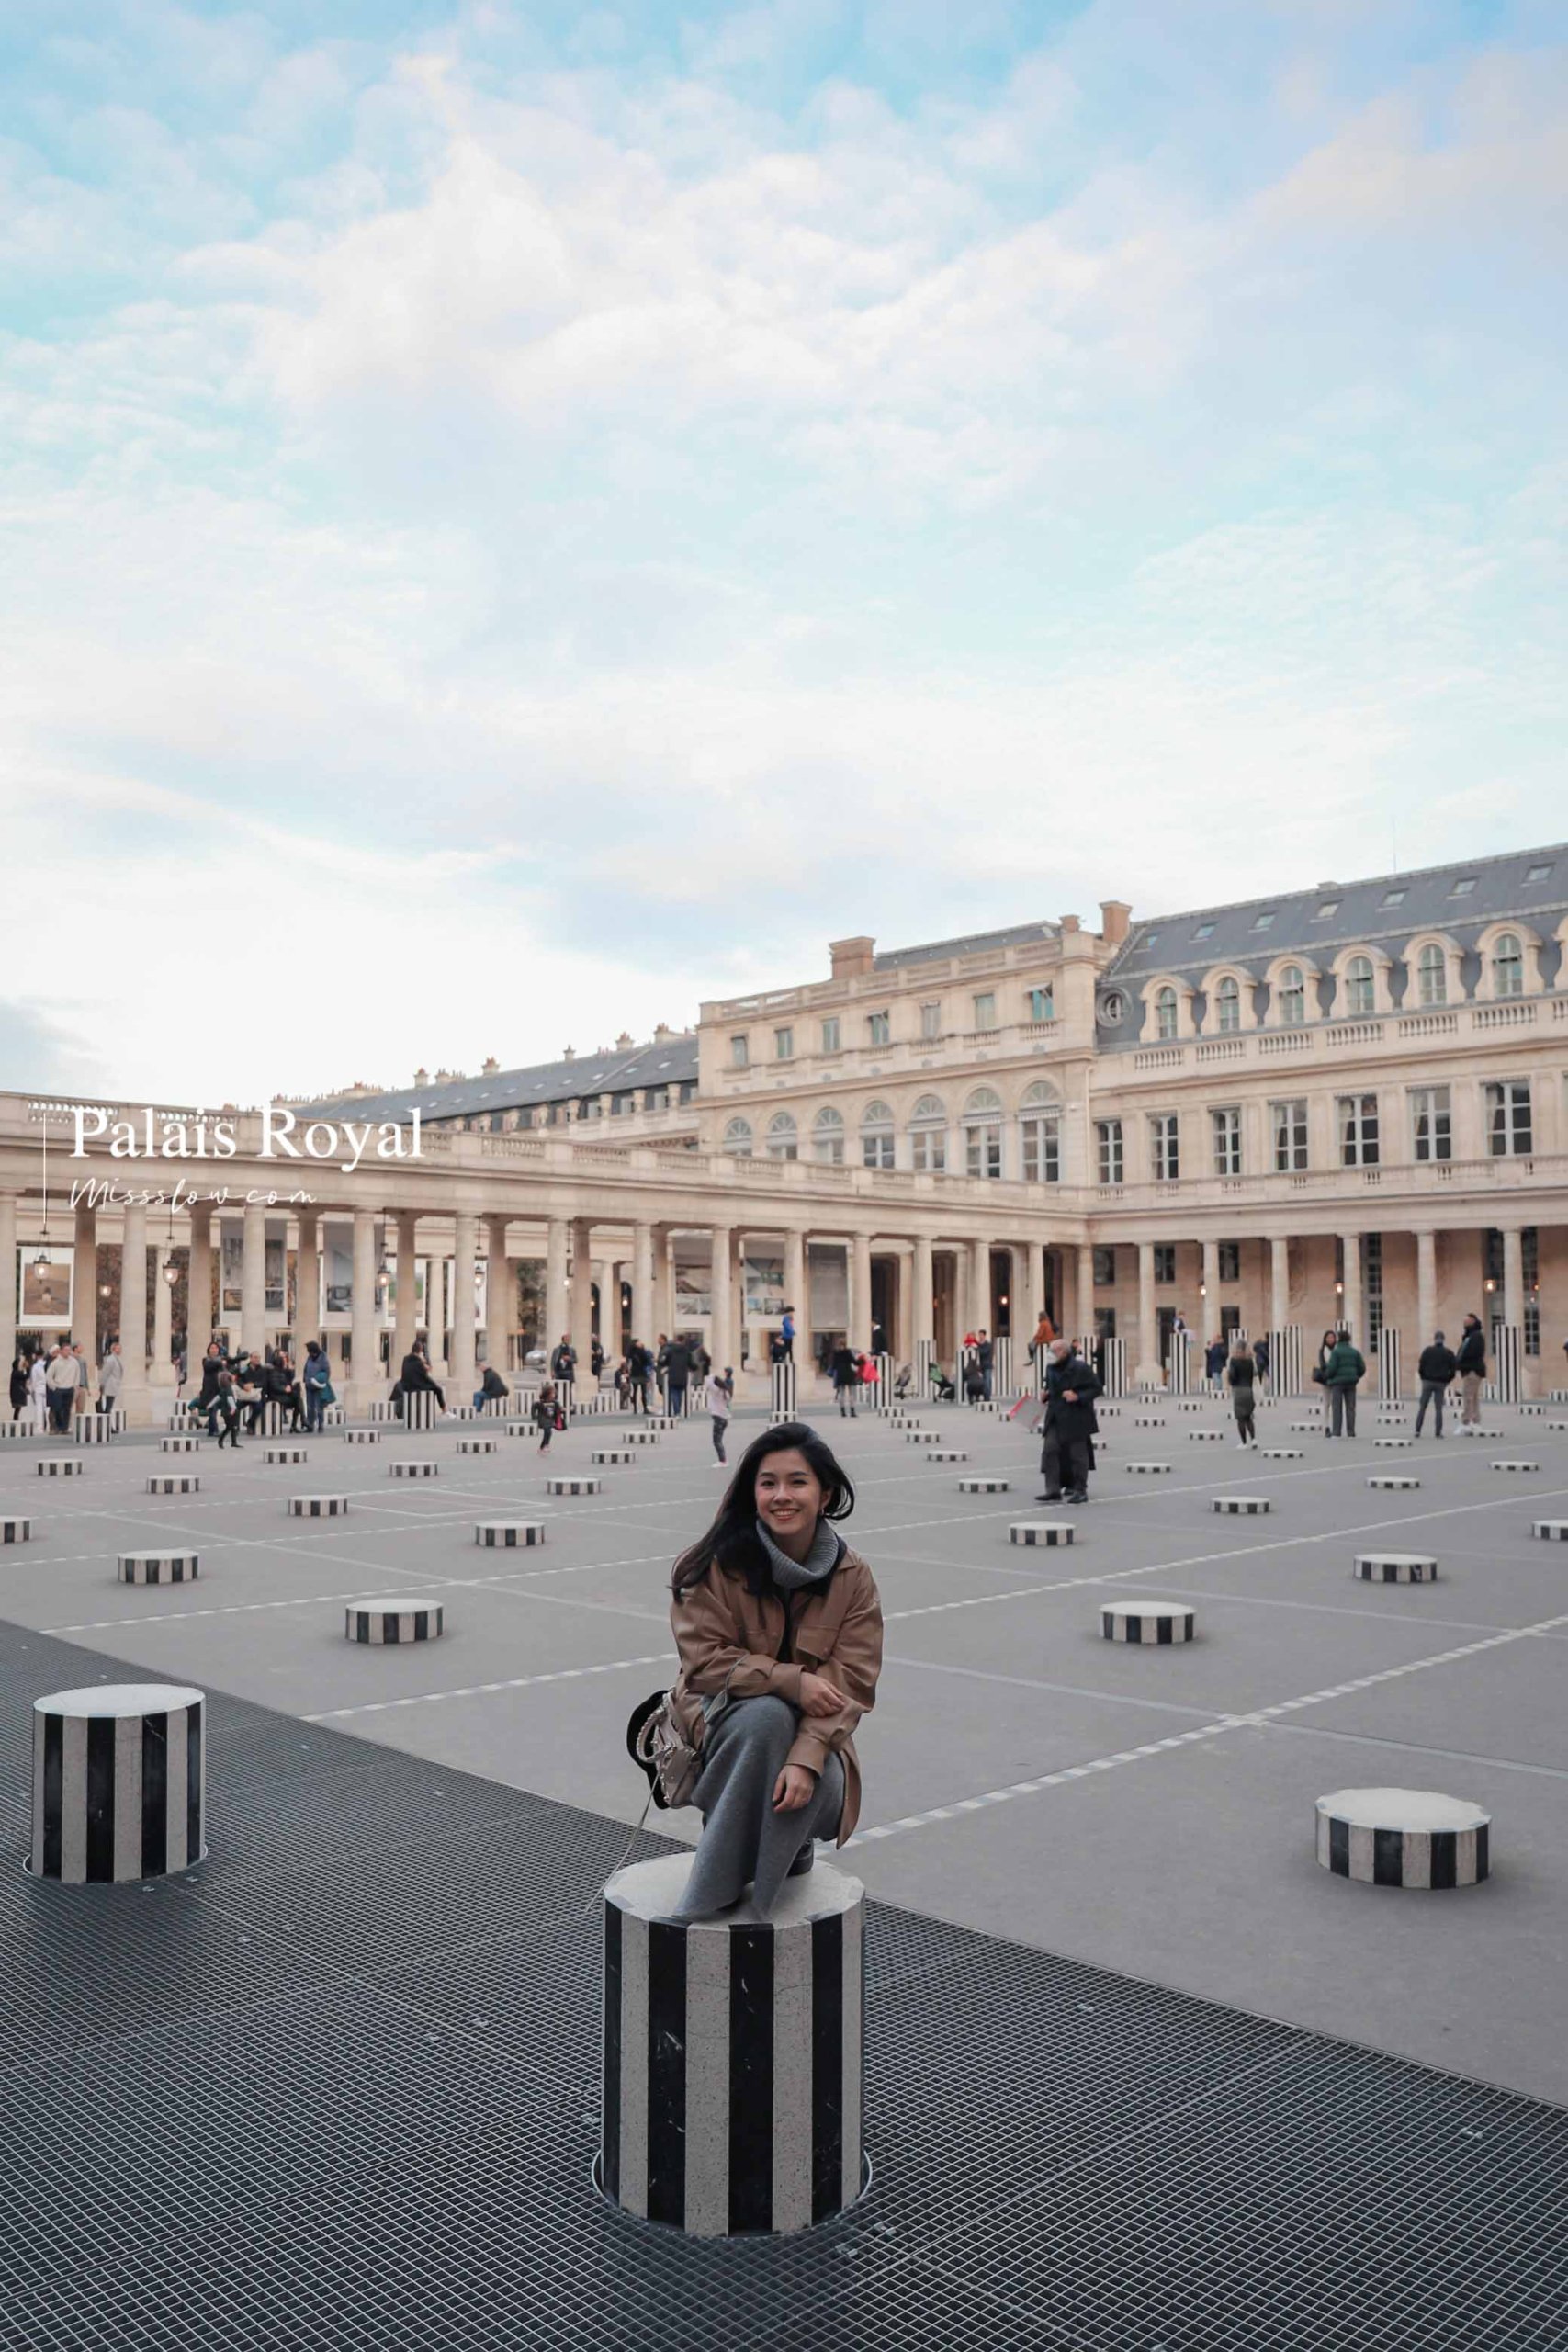 巴黎皇家宮殿-布倫黑白圓柱